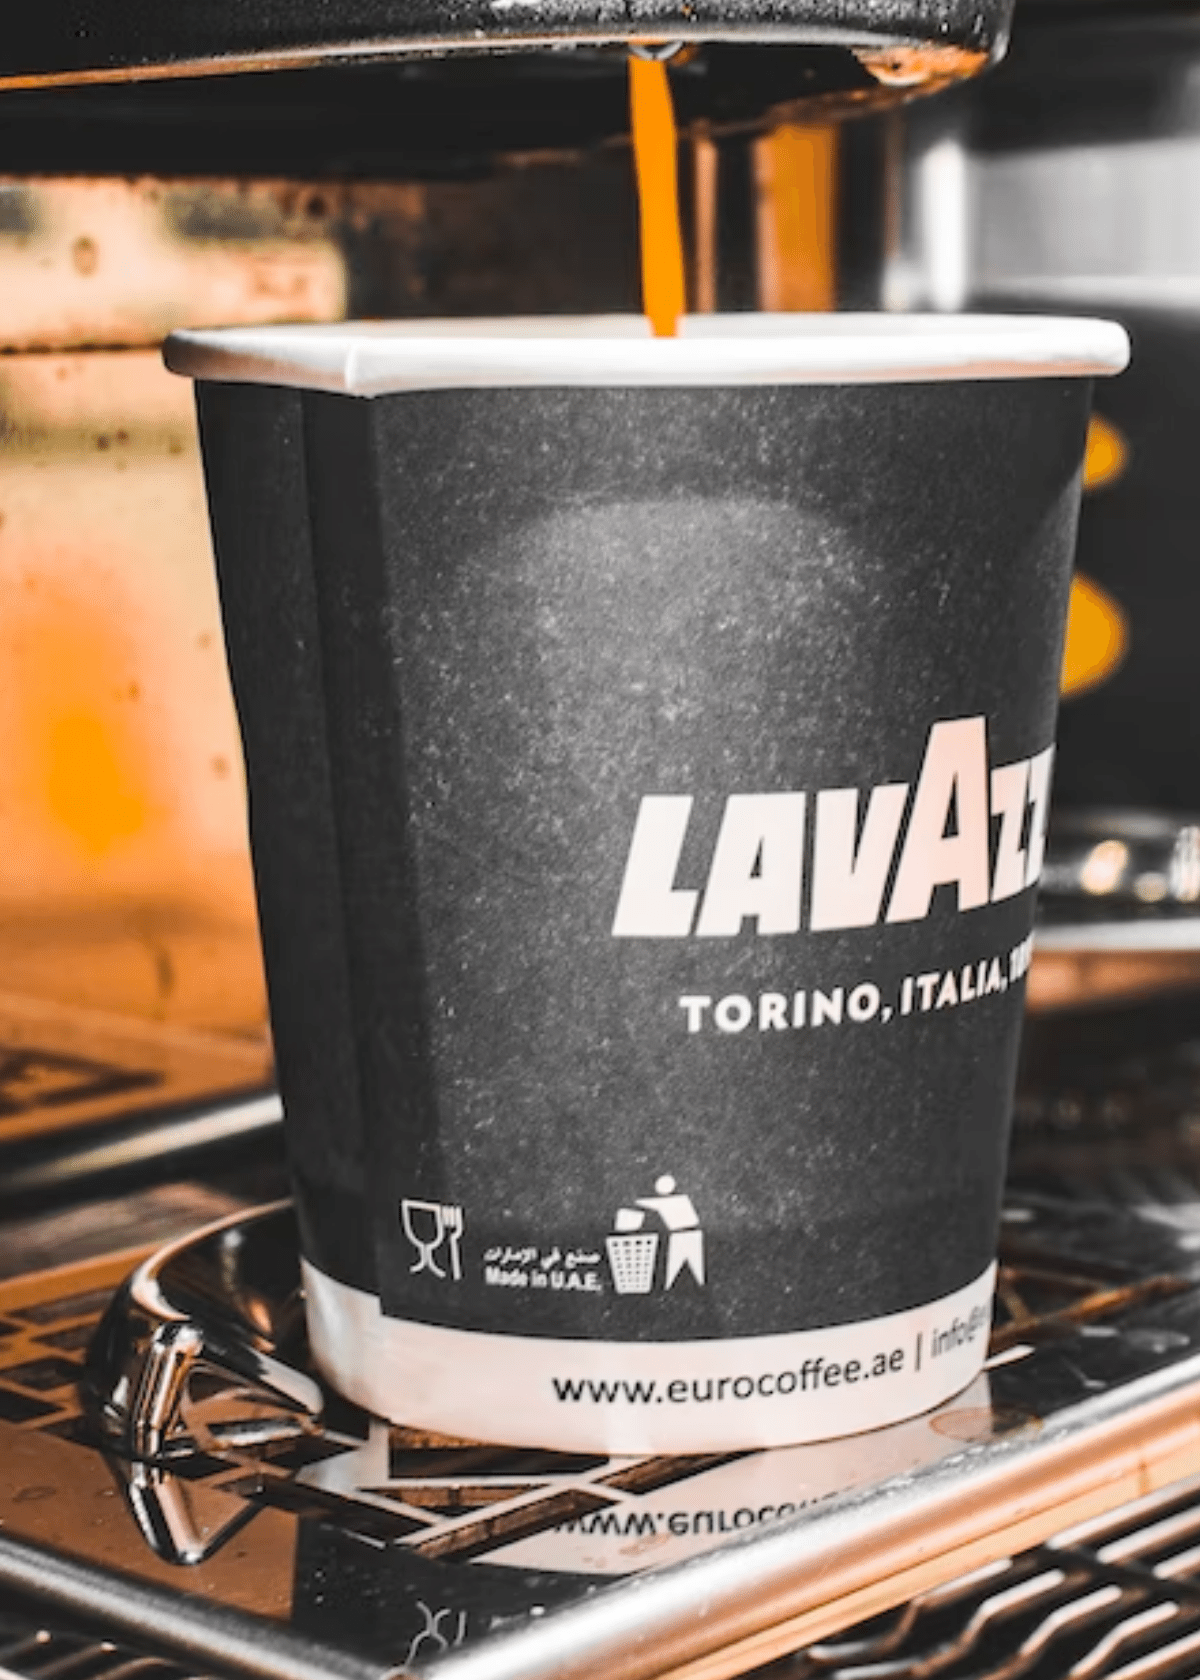 lavazza coffee